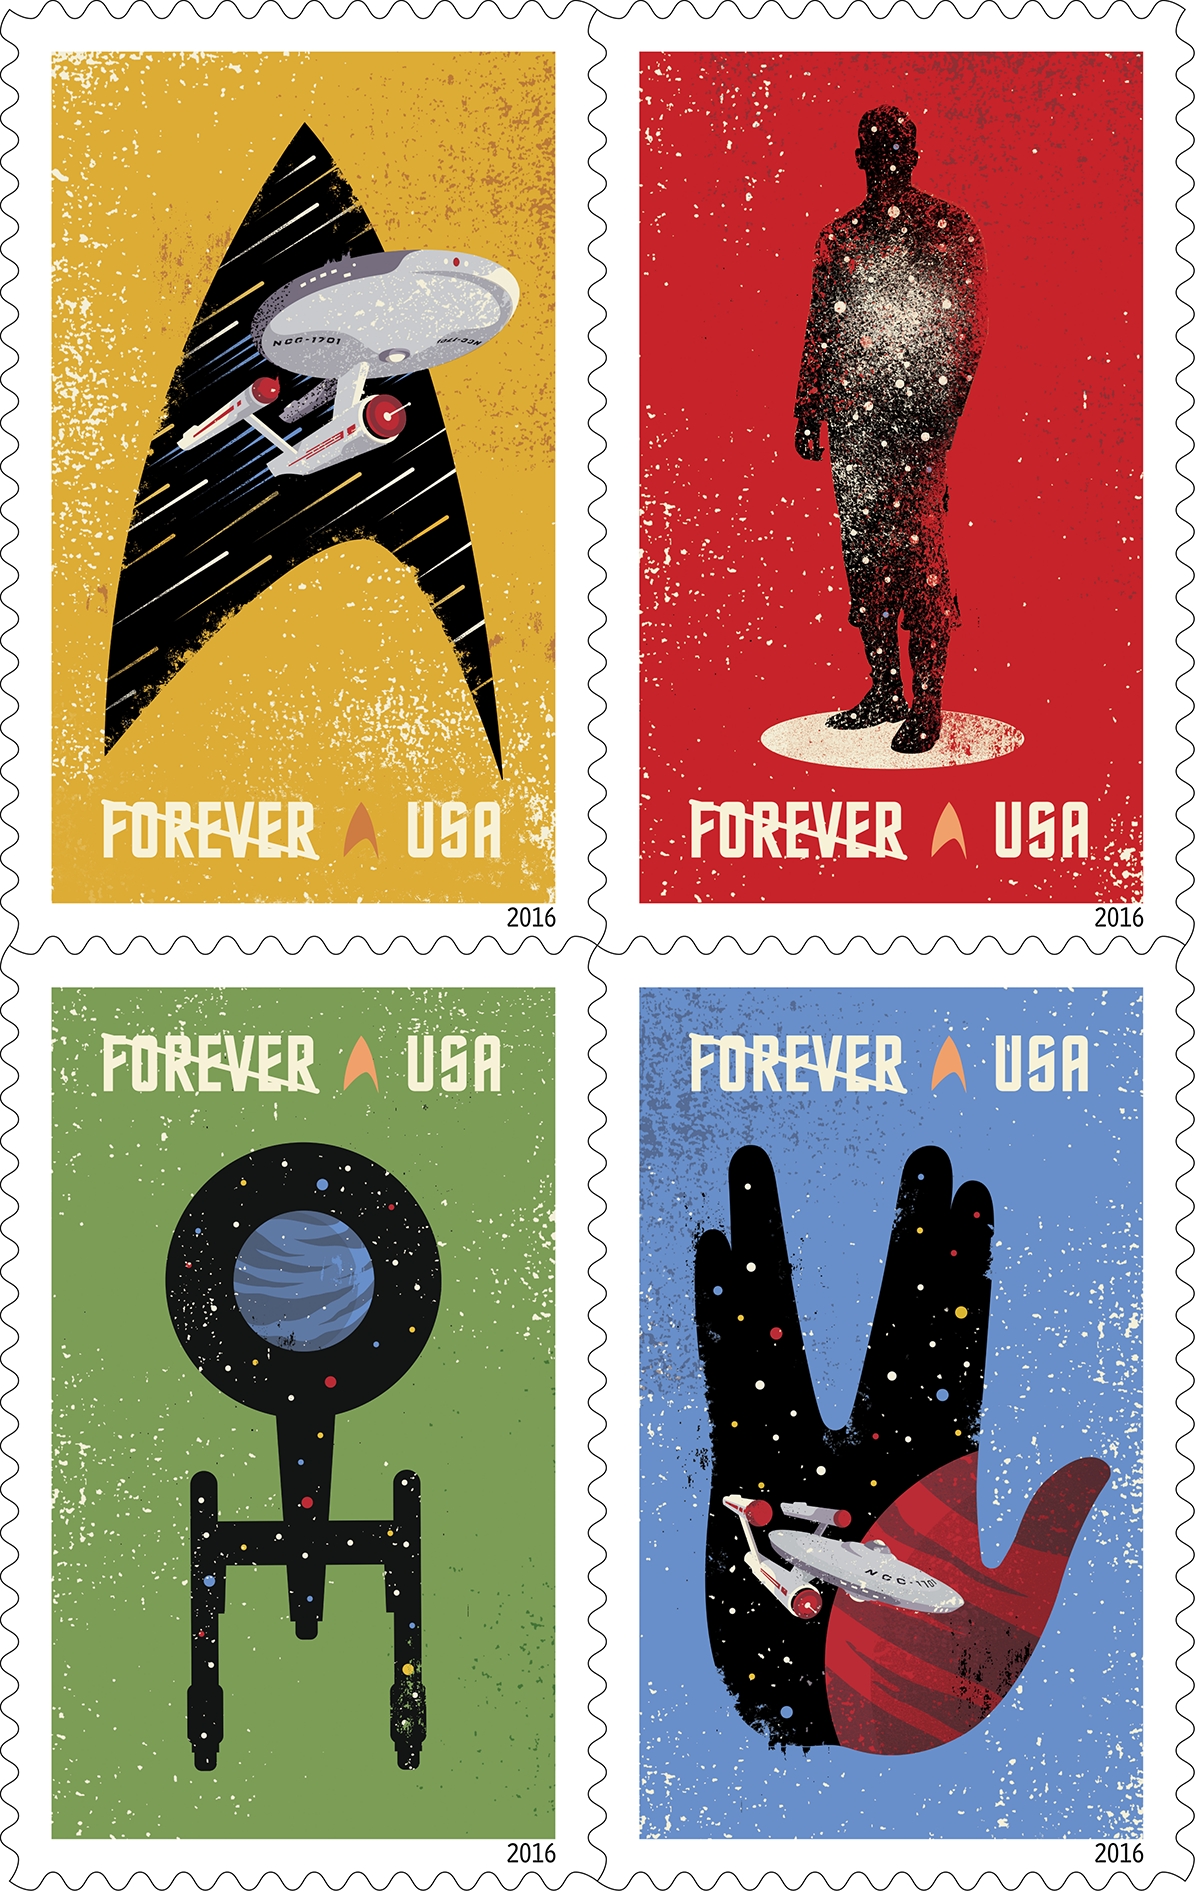 Star TrekTM Forever Stamp